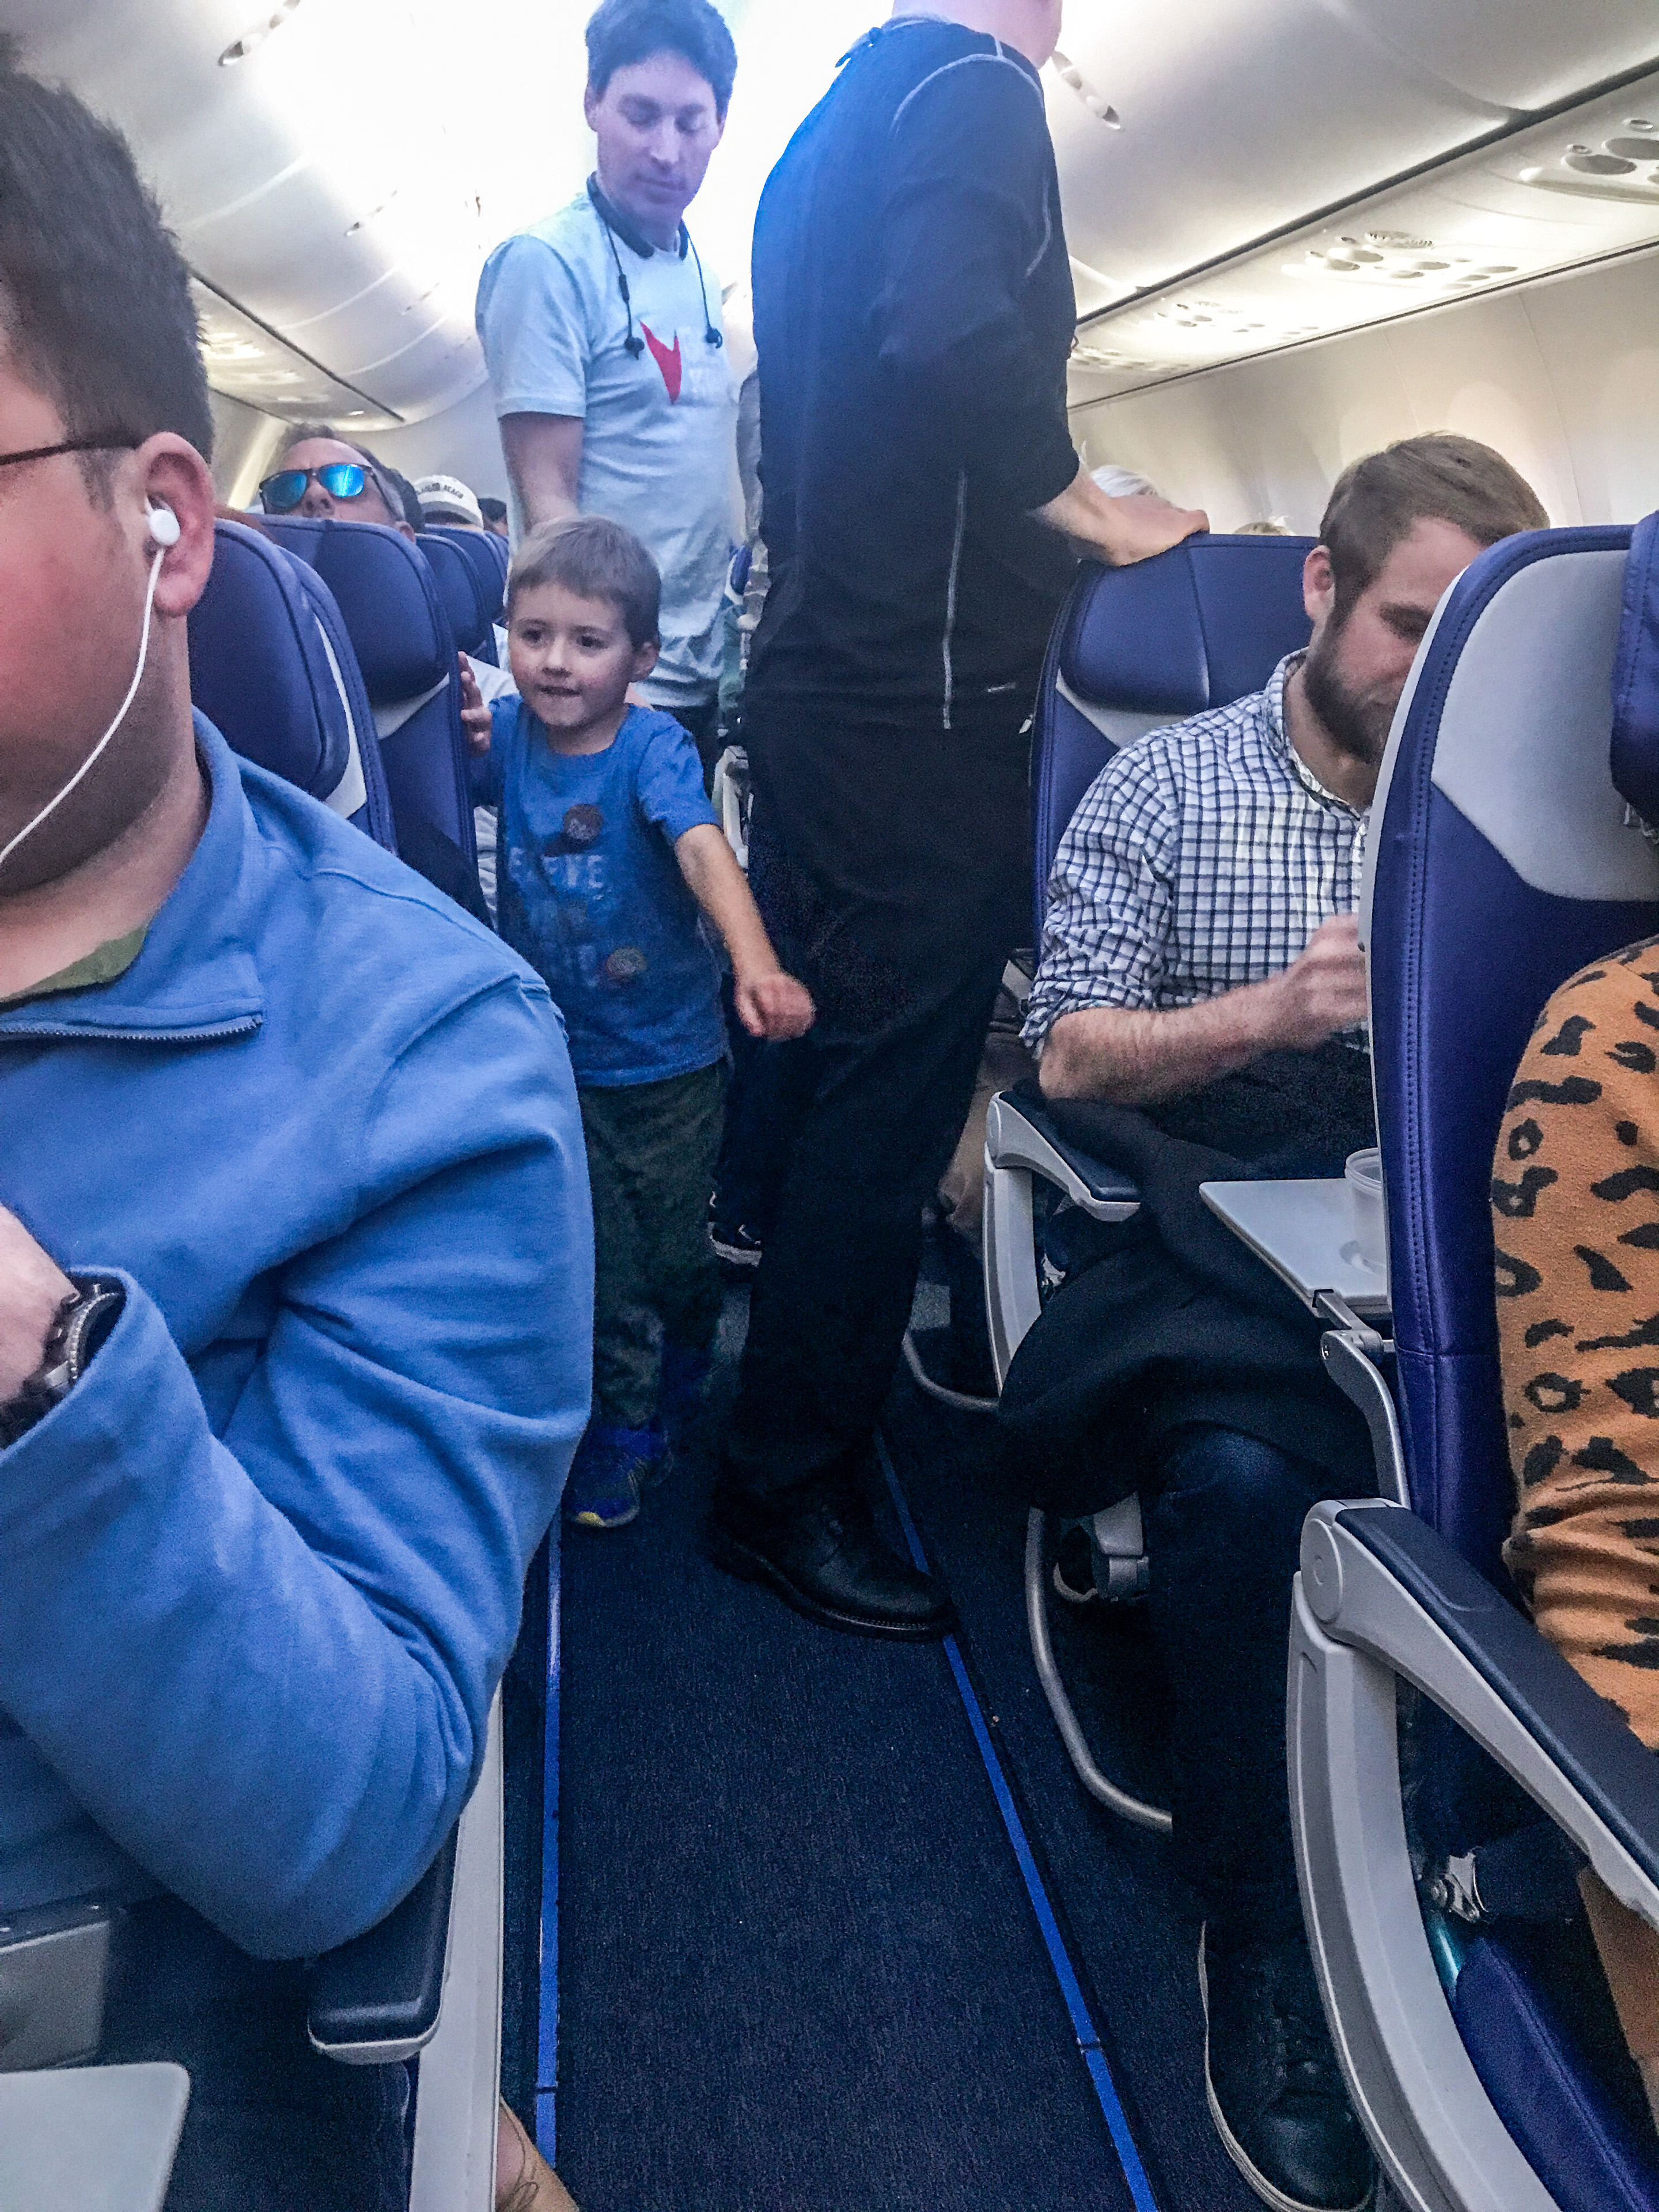 A little boy walking down an airplane aisle